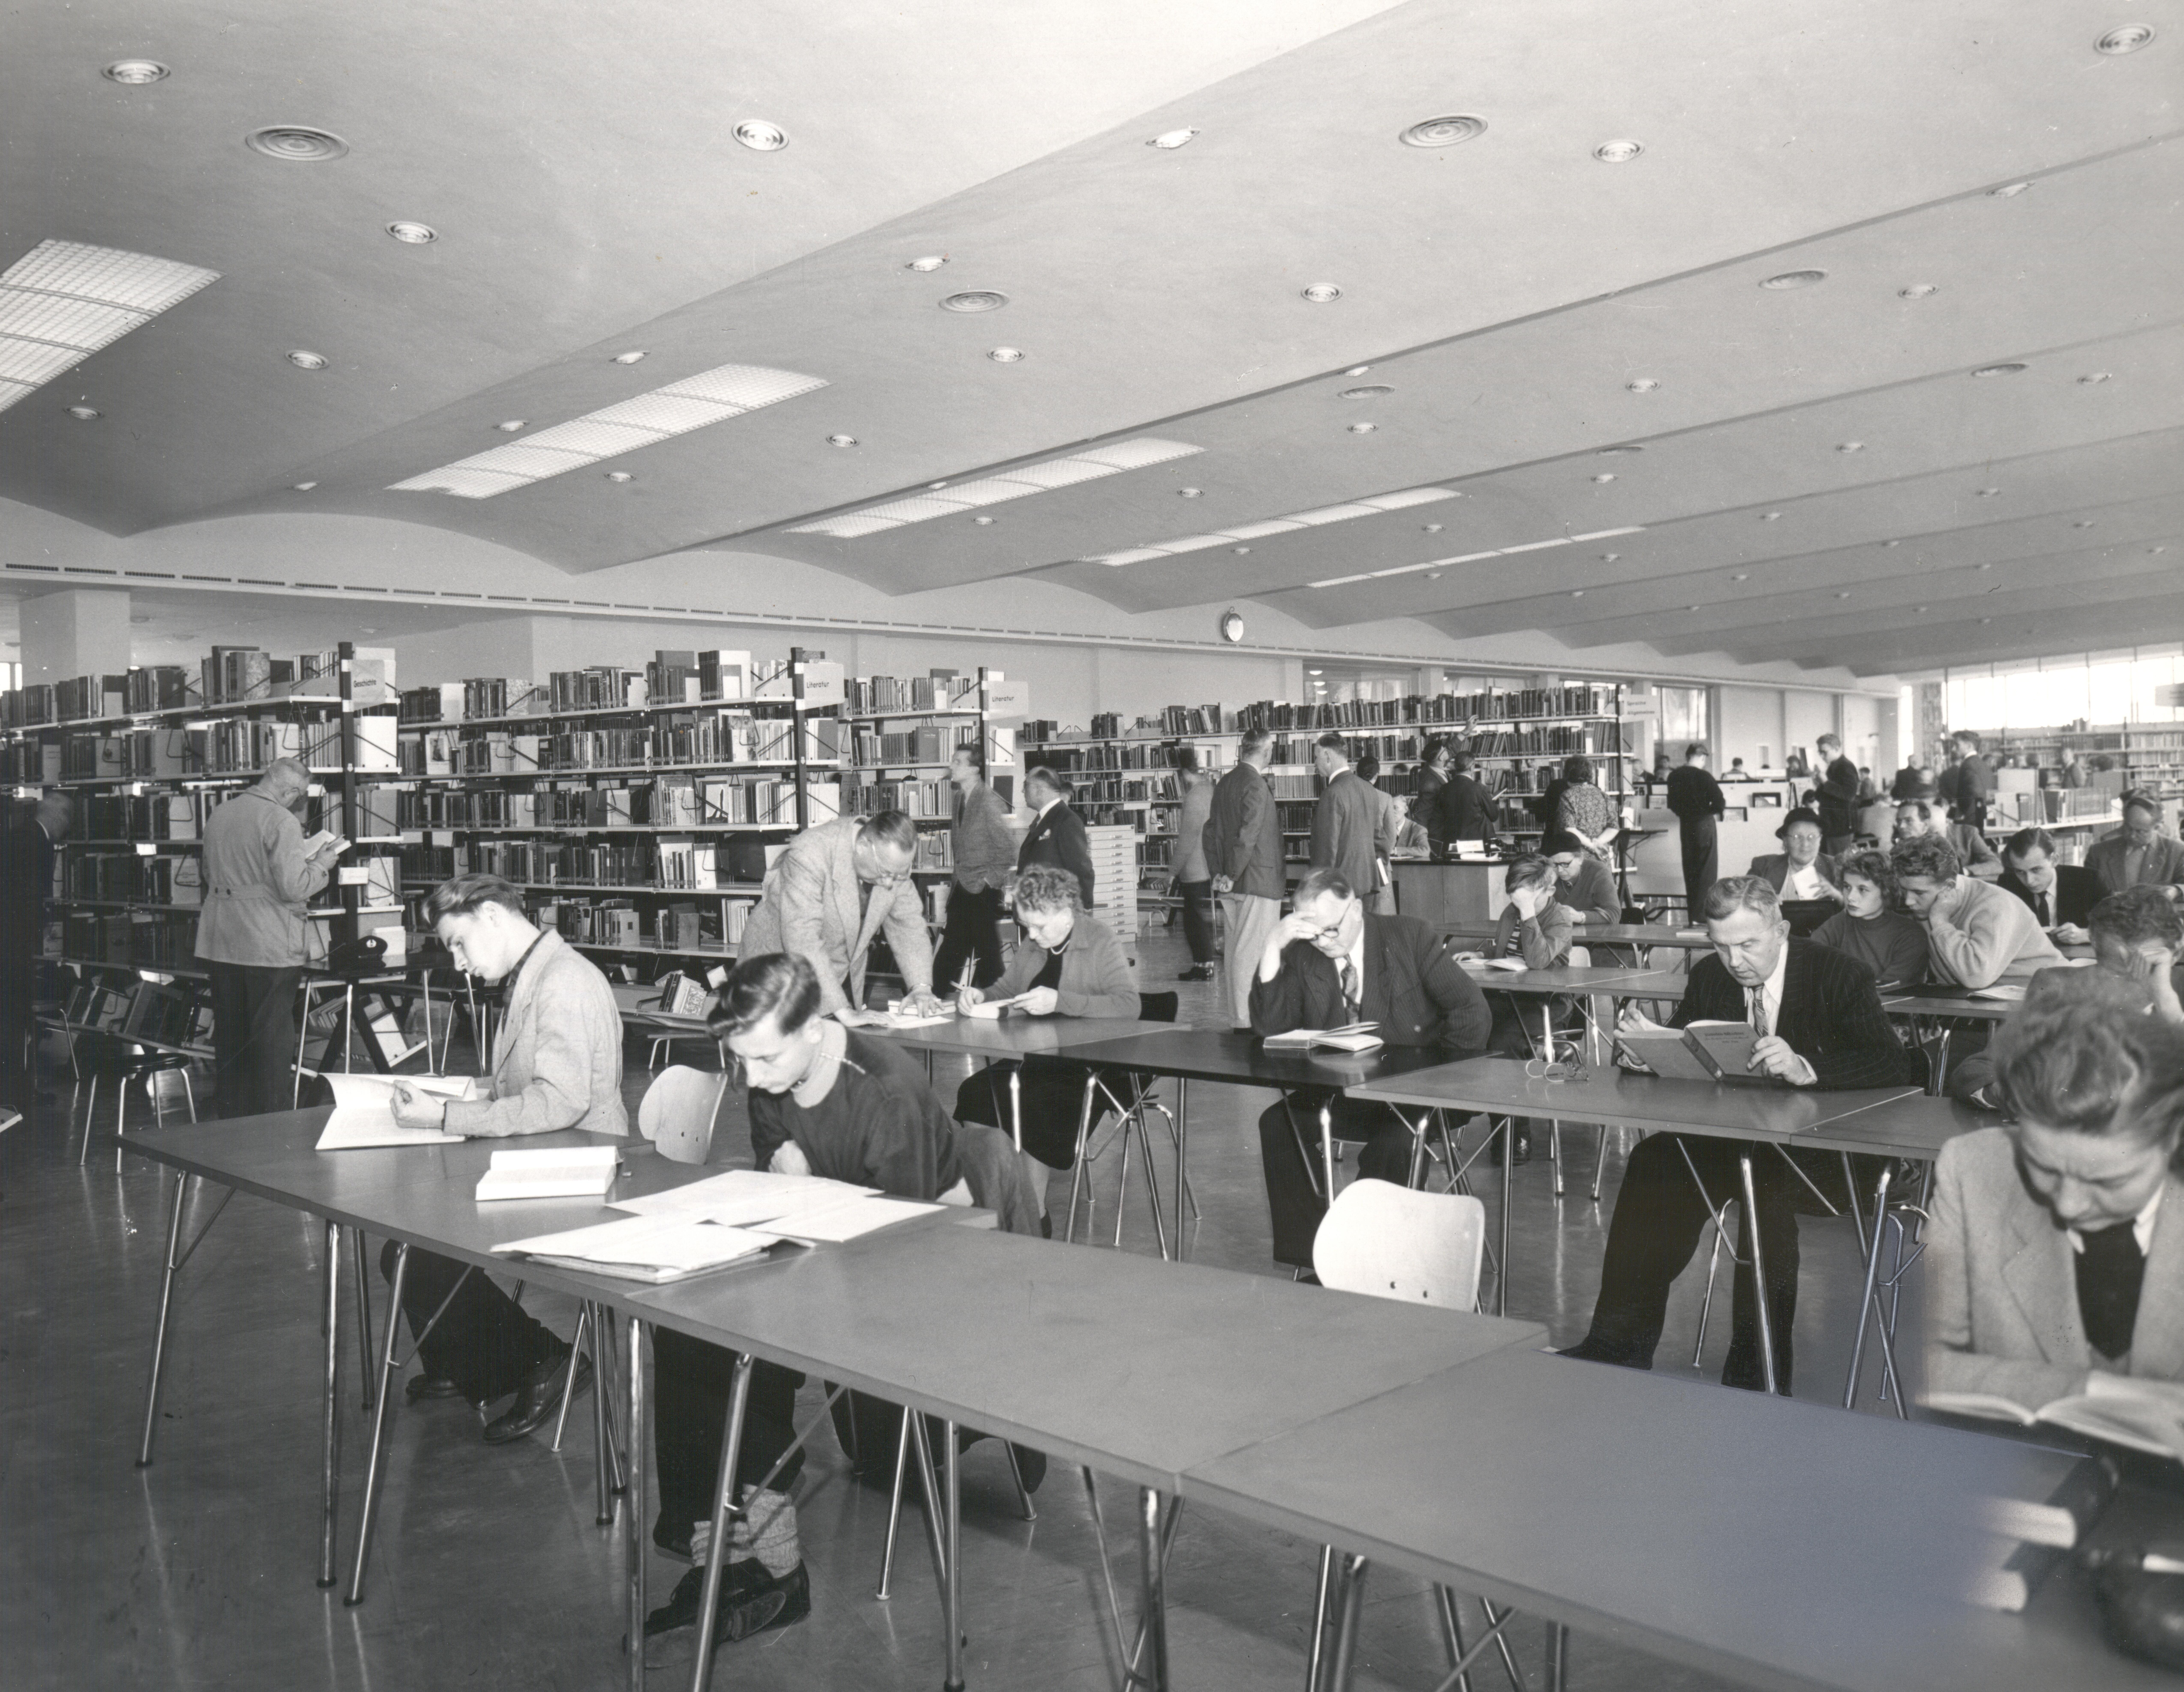 Historische Aufnahme von Menschen, die mit Büchern an langen Tischen in Bibliothek sitzen